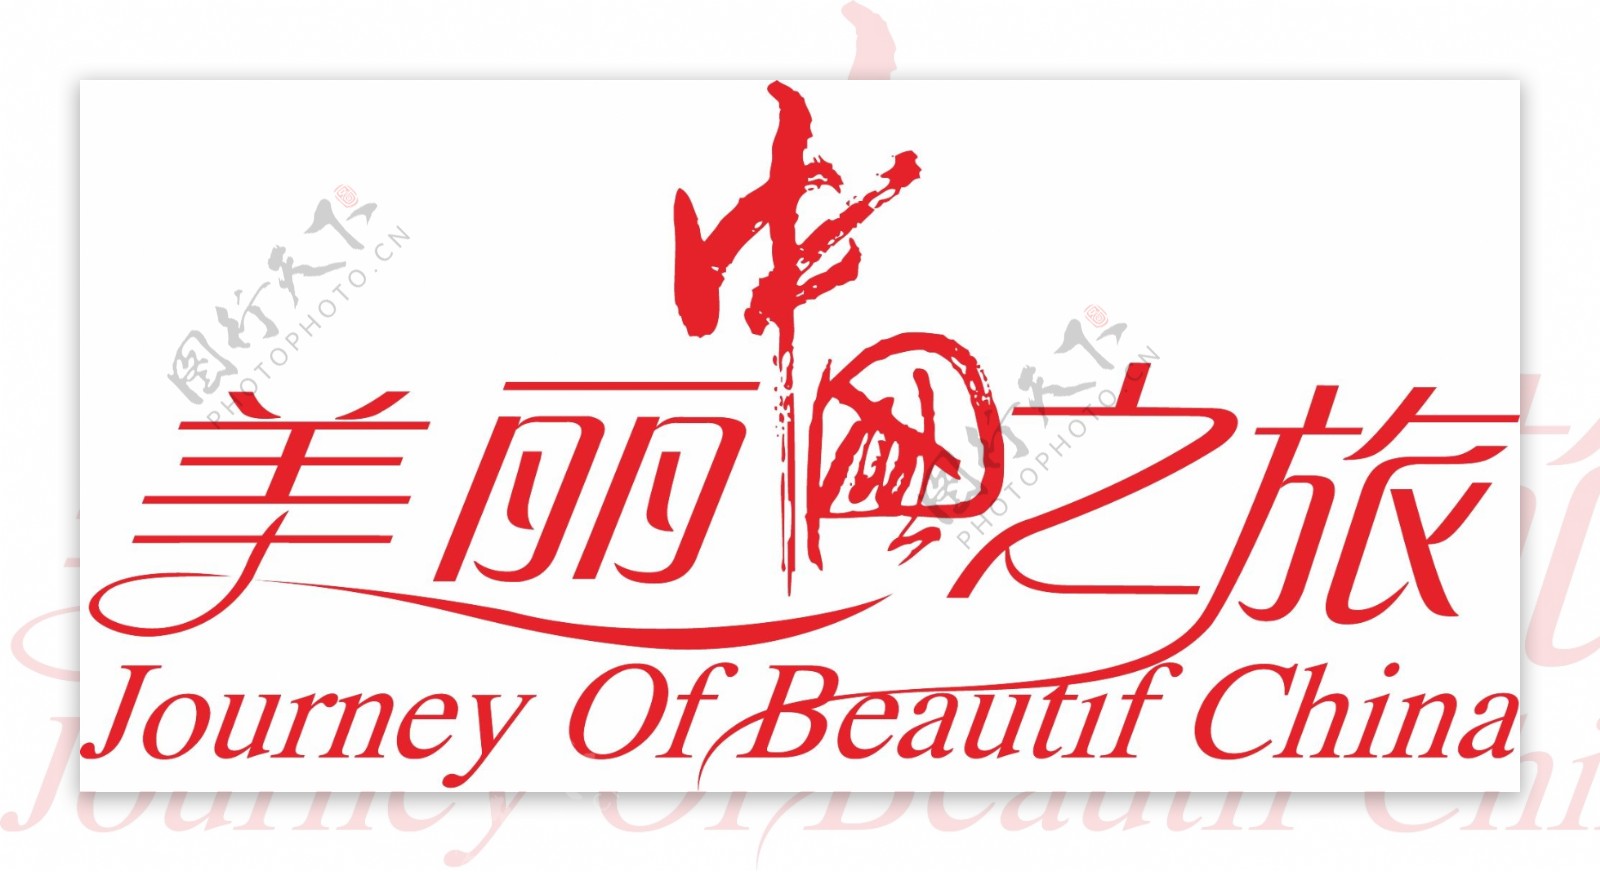 美丽中国之旅字体设计